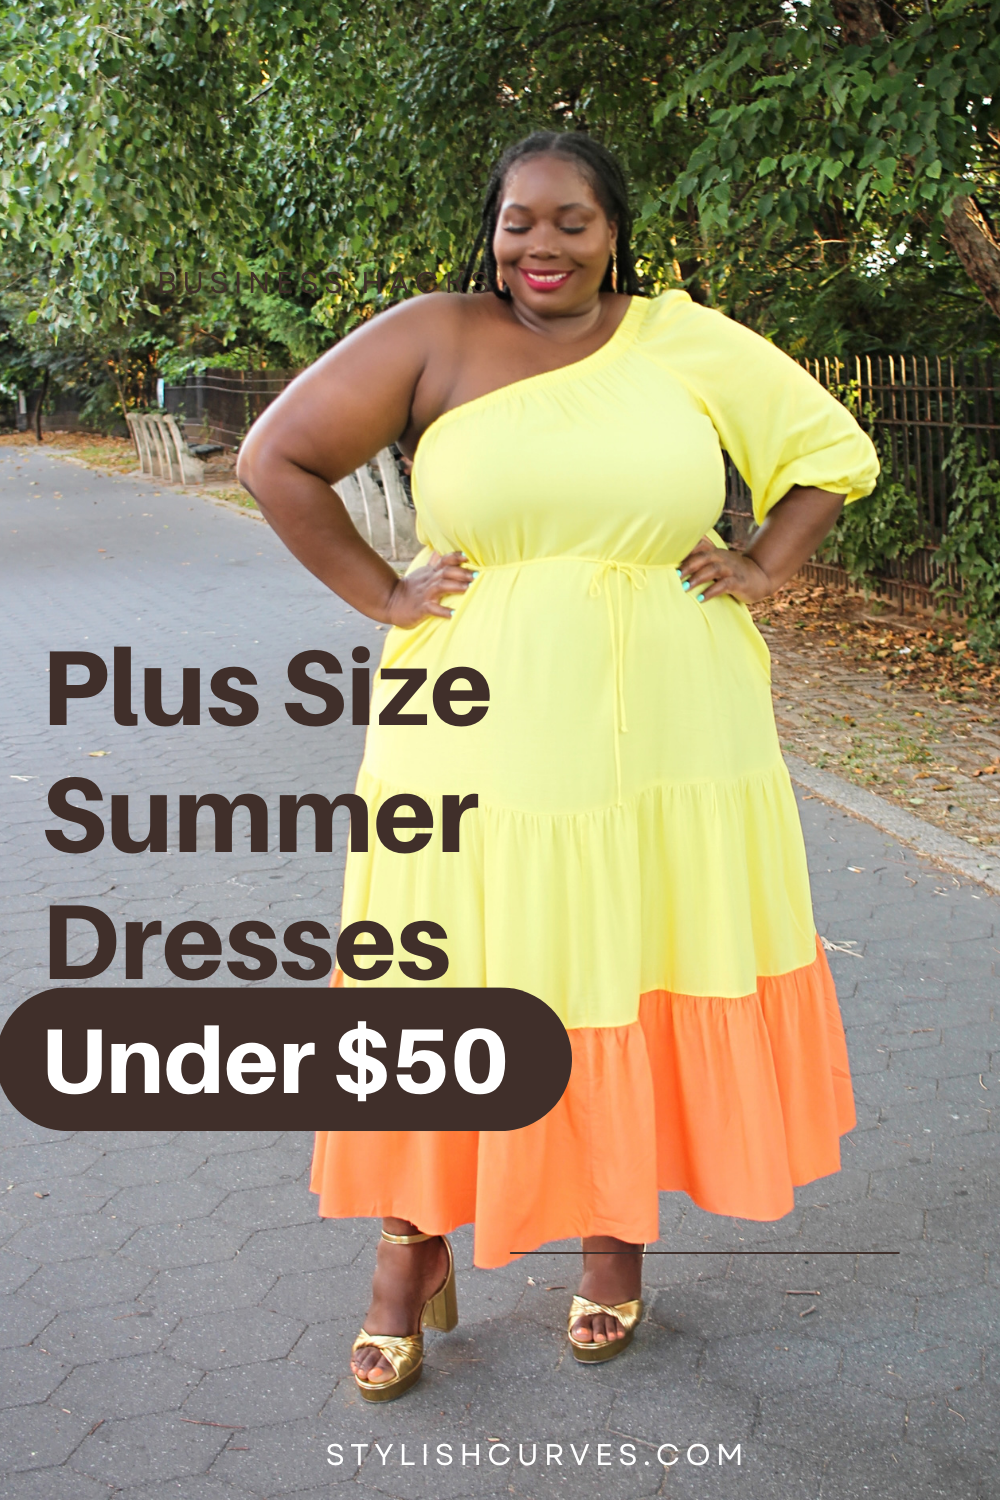 Fun & Flirty Size Summer Dresses Under